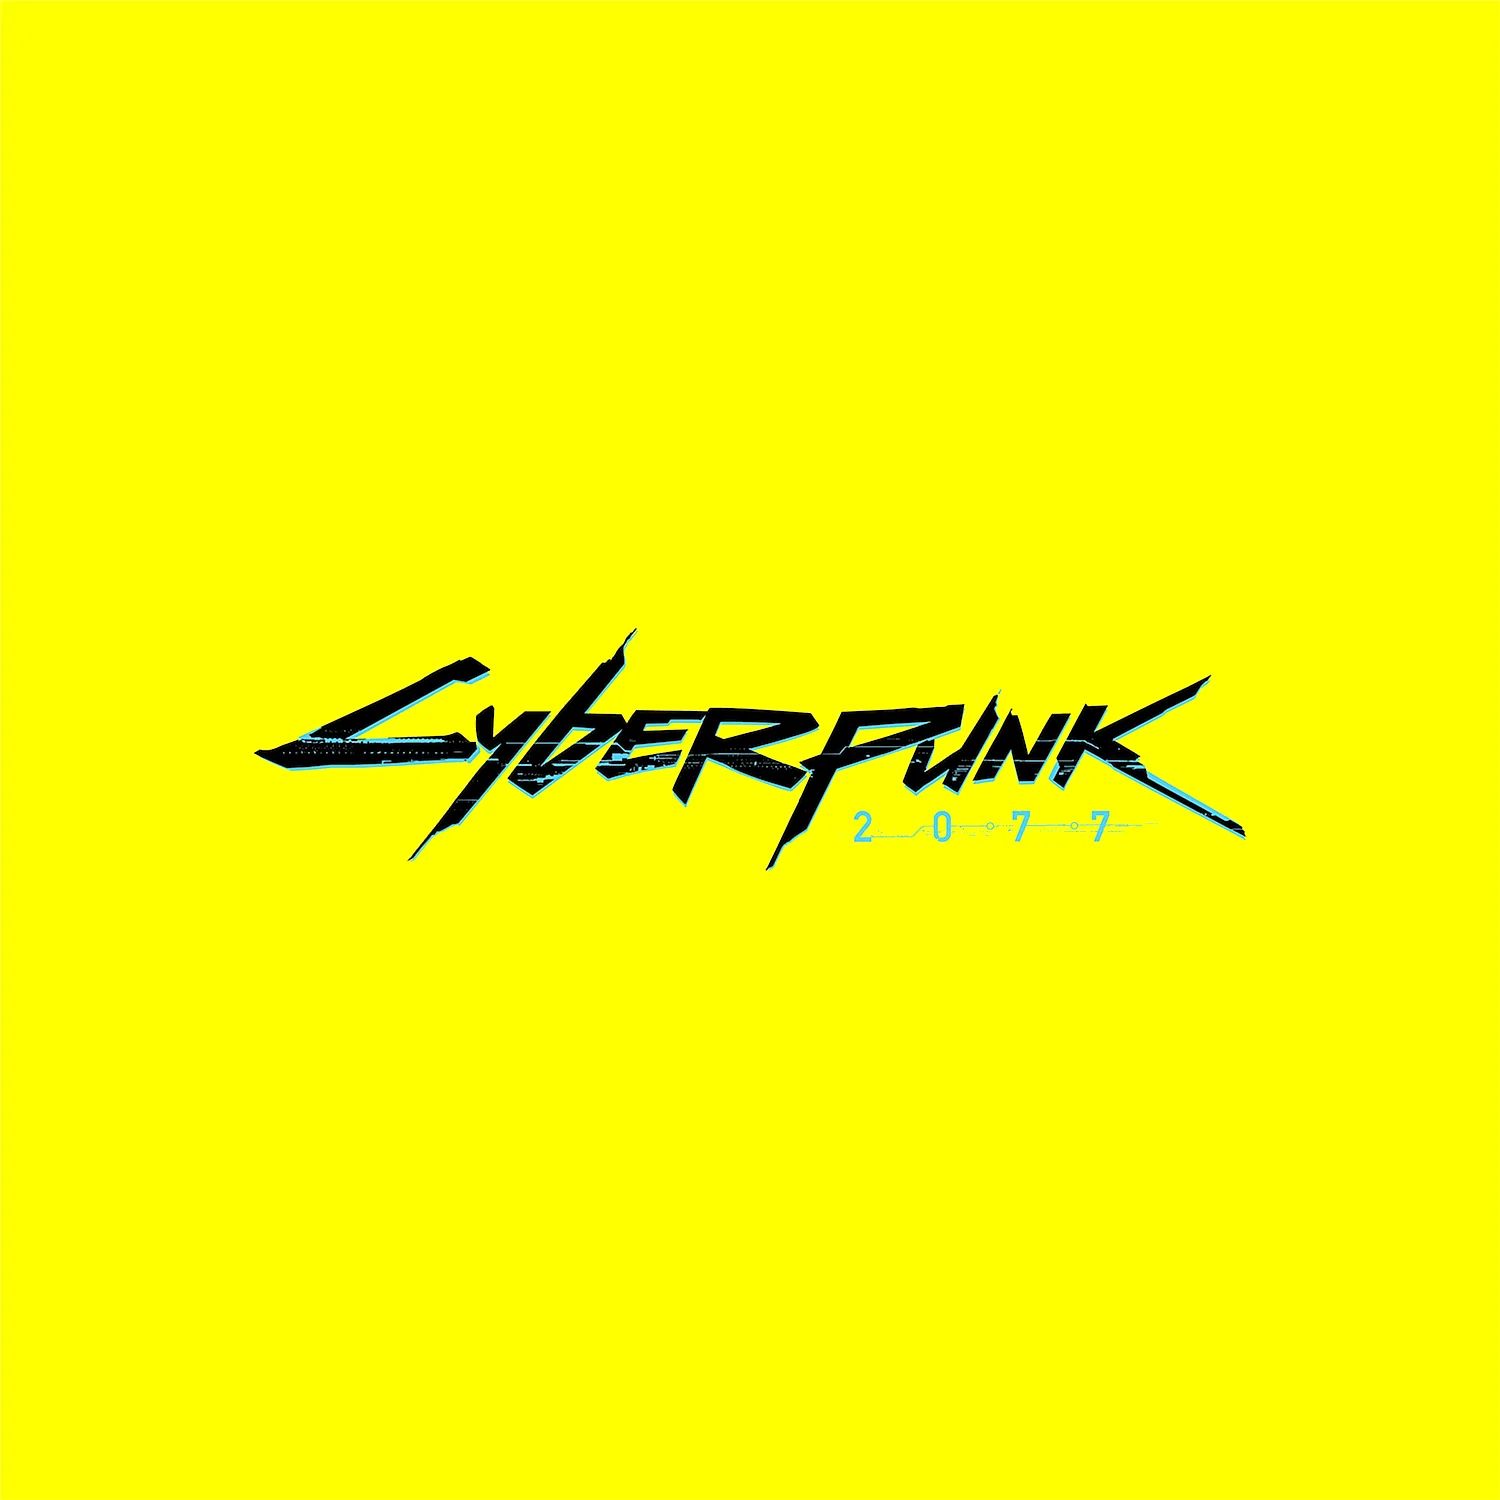 Логотип игры Cyberpunk 2077